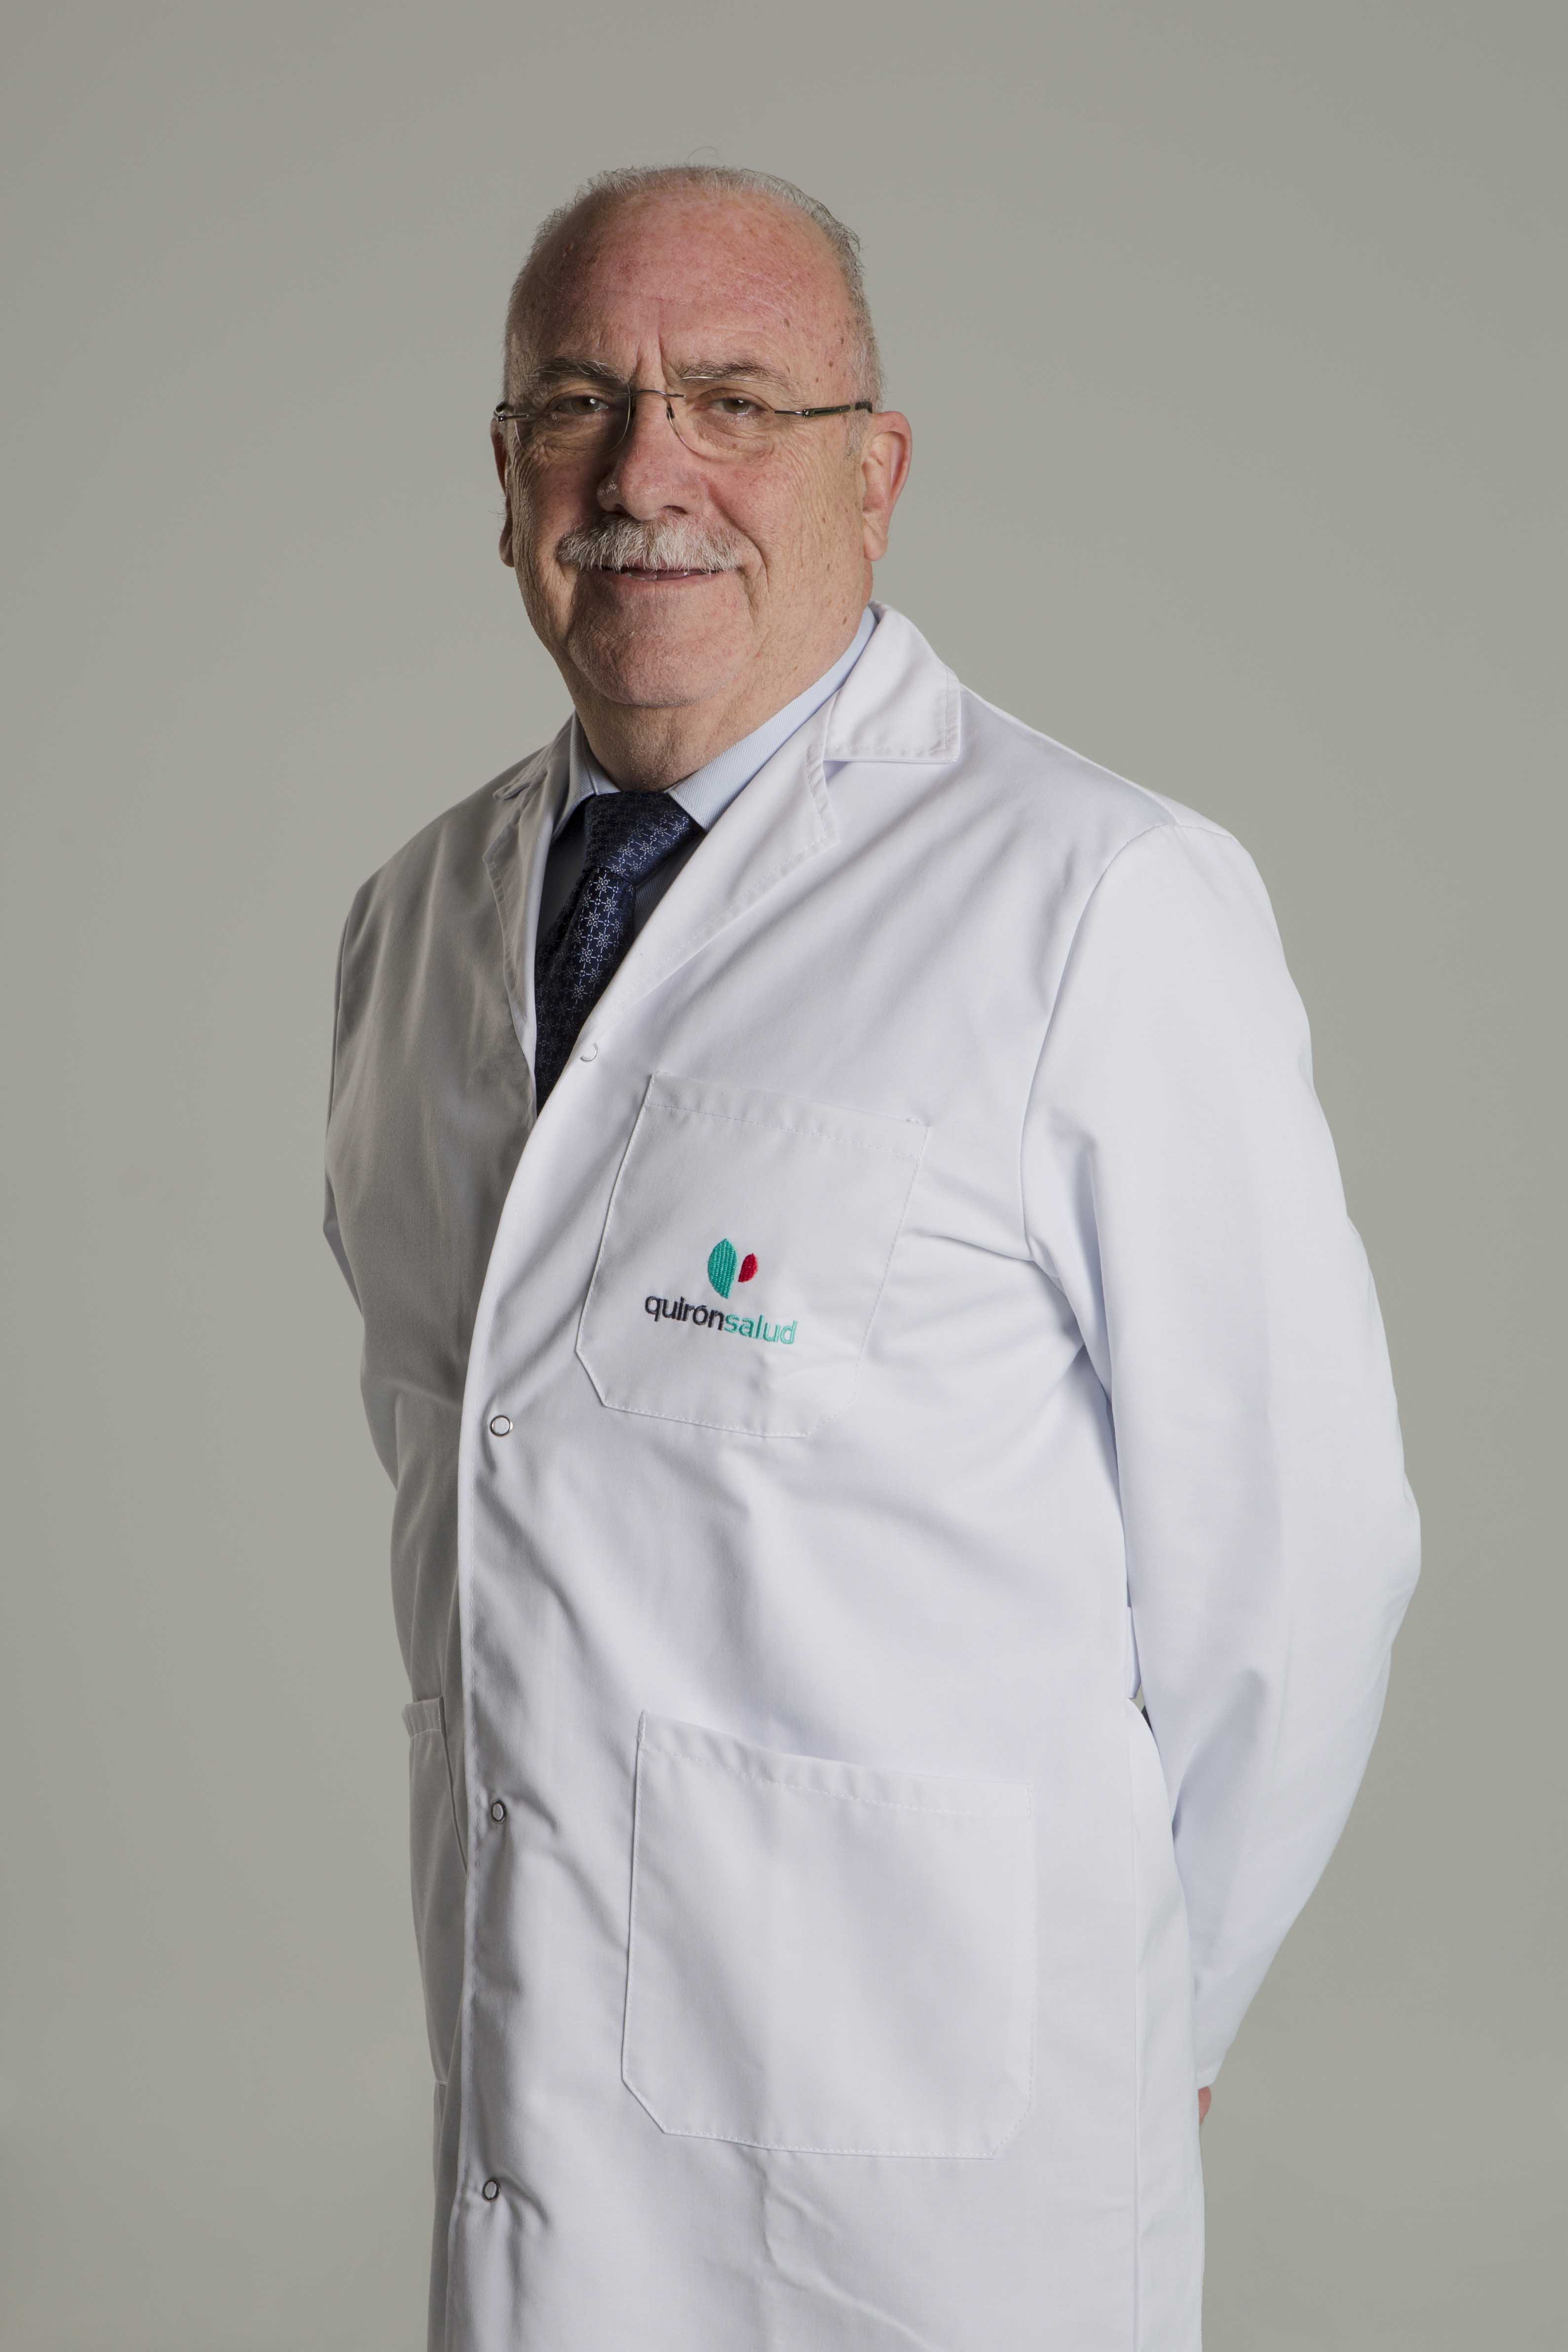 Doctor Juan Antonio Casellas, jefe de la Unidad de Endoscopias Quirónsalud Alicante